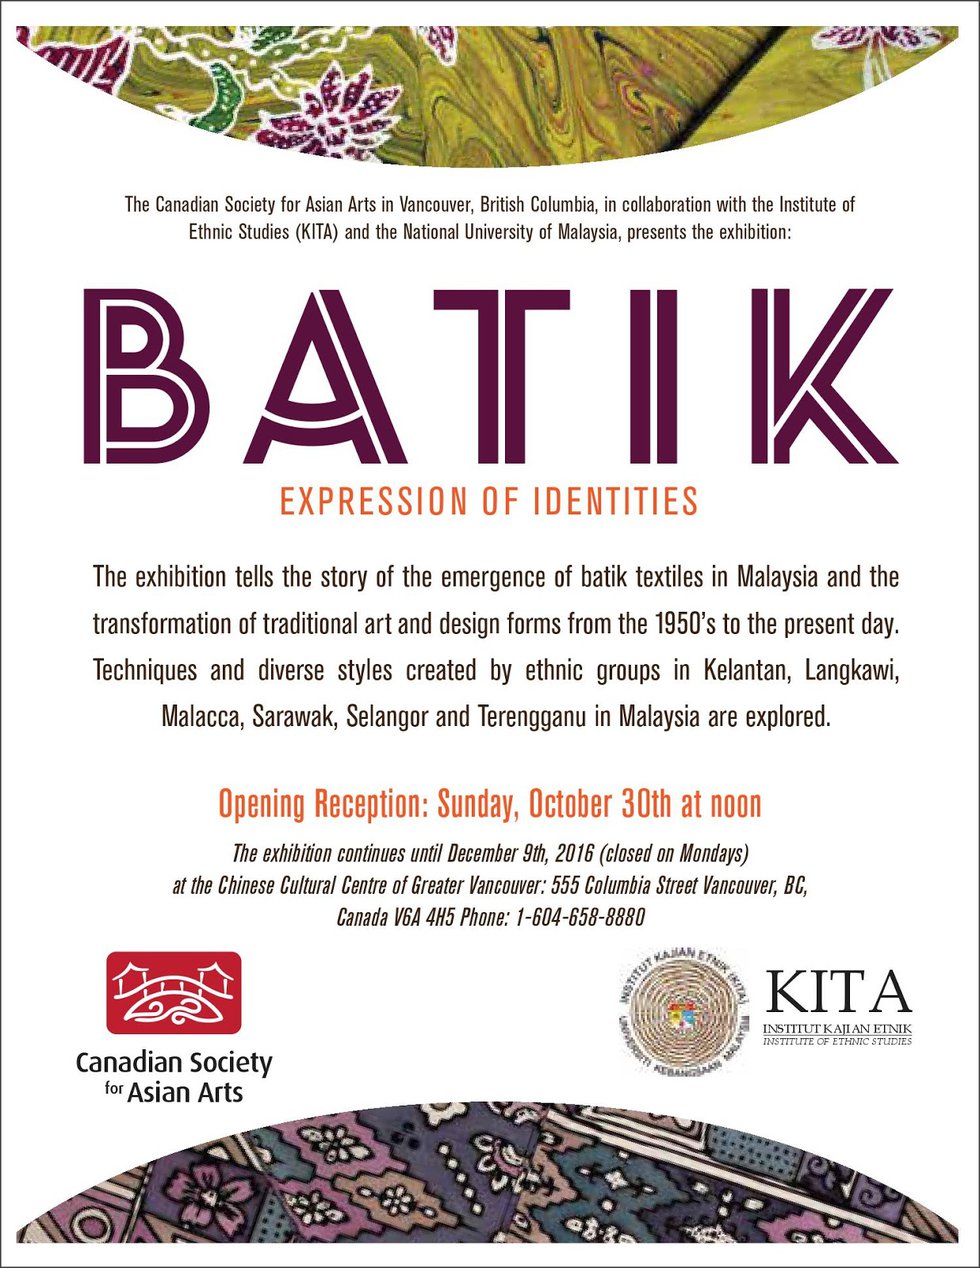 Batik invite